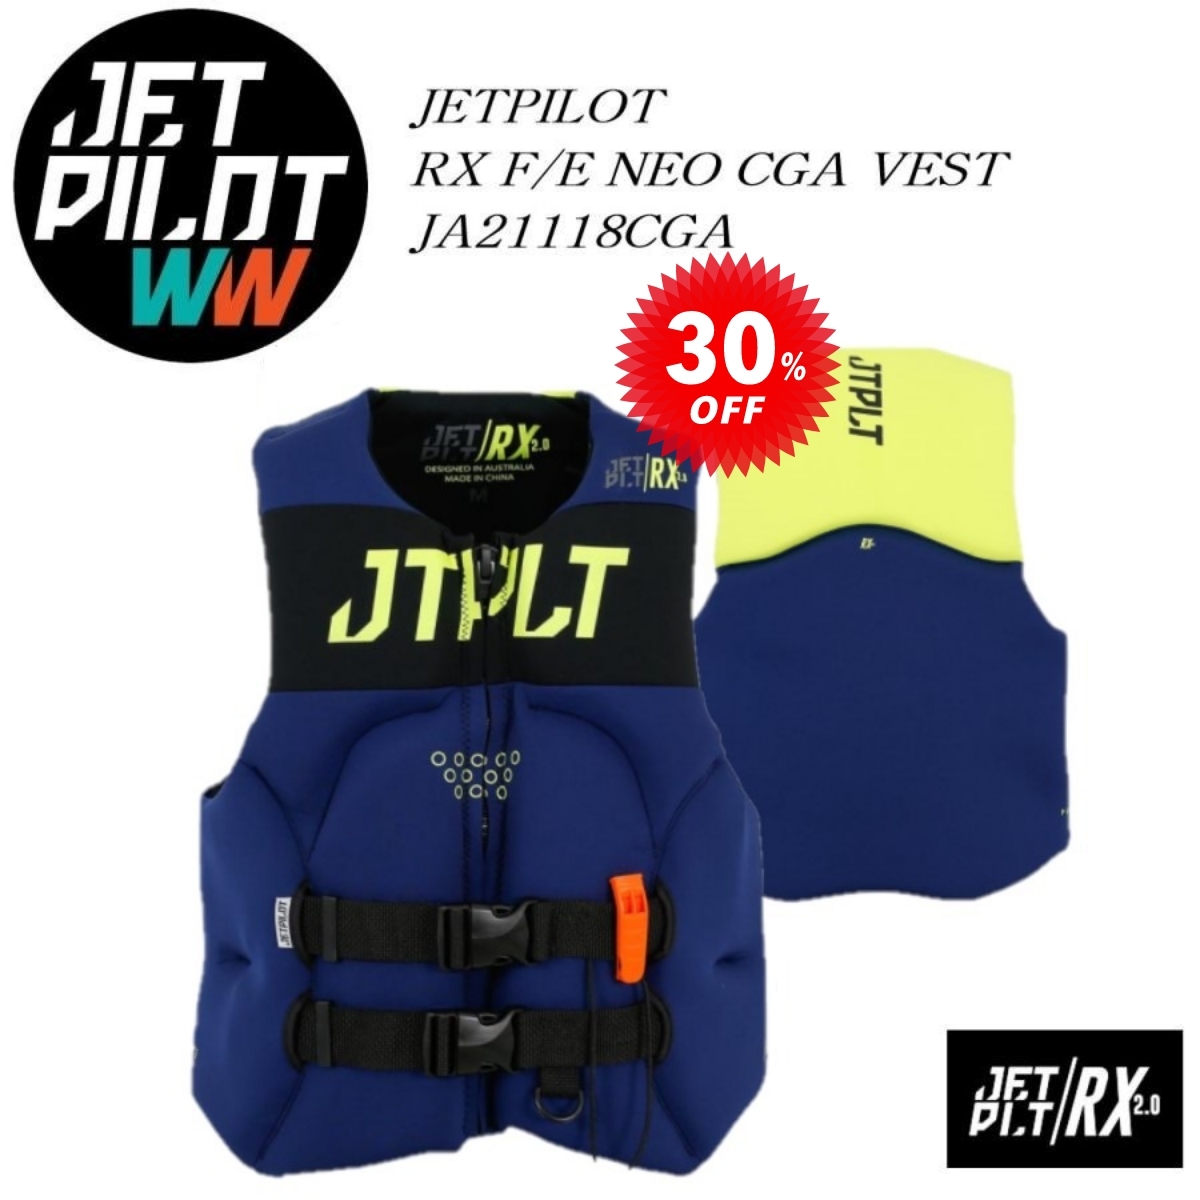 ジェットパイロット JETPILOT JCI認定ベスト セール 30%オフ 送料無料 RX F/E ネオCGAベスト ネイビー/イエロー 3XL JA21118CGA